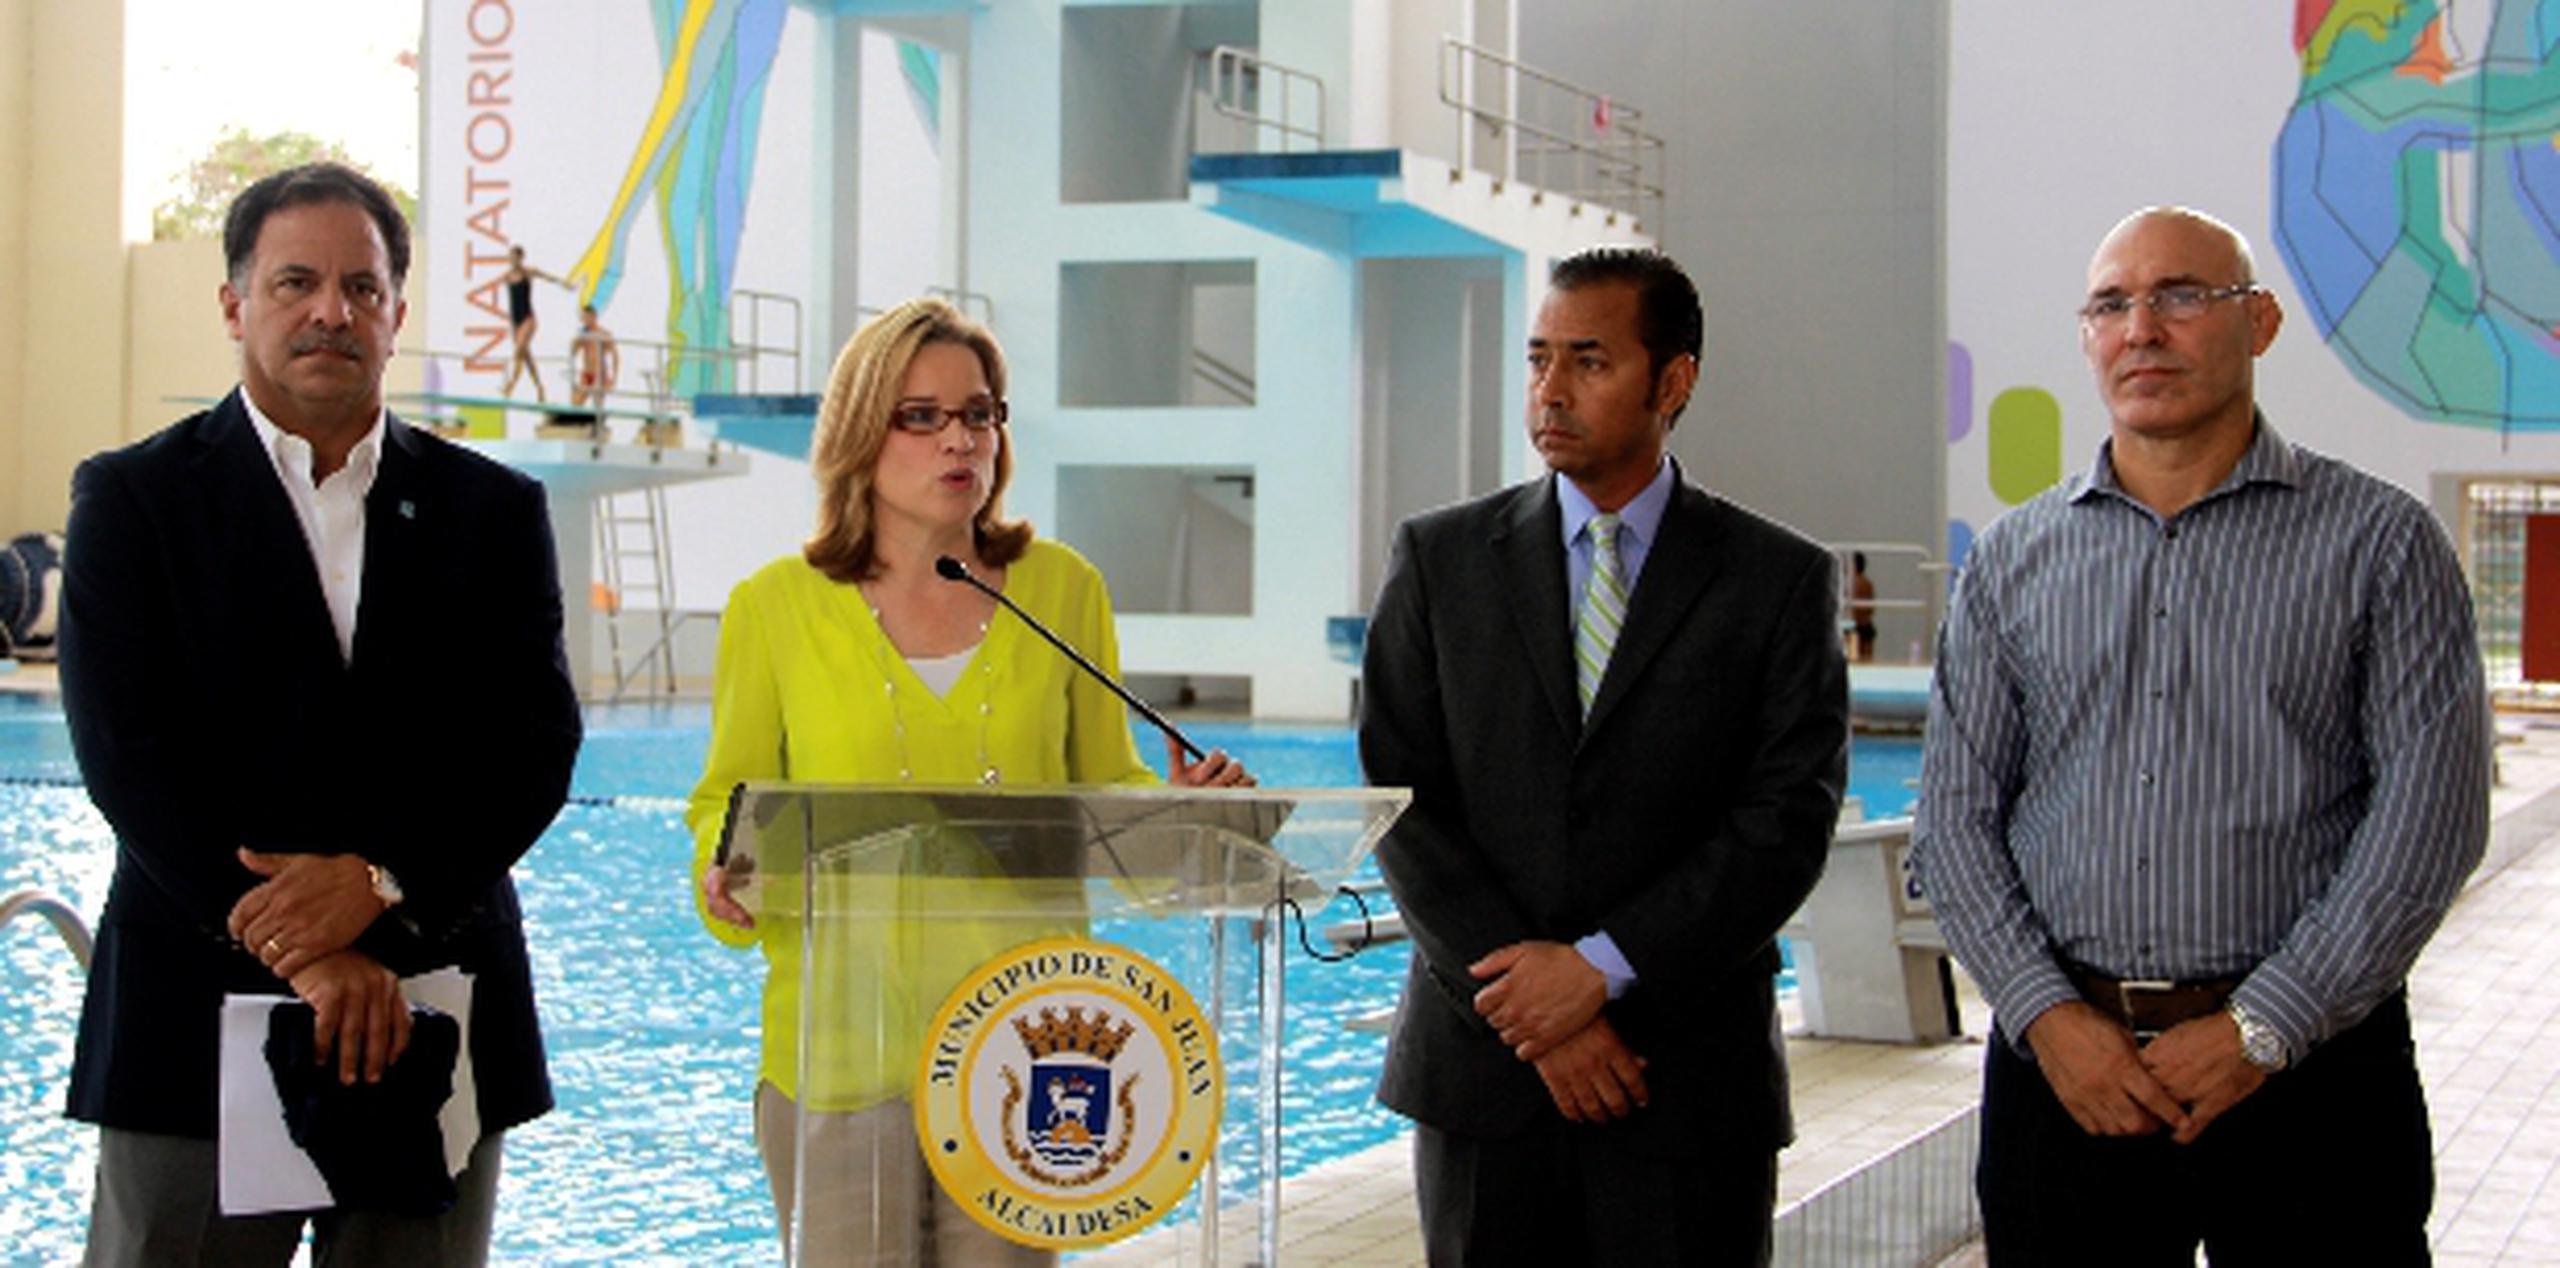 La alcaldesa de San Juan, Carmen Yulín Cruz, dijo que su ciudad está lista para albergar el Gran Premio de Clavados de la FINA. Suministrada